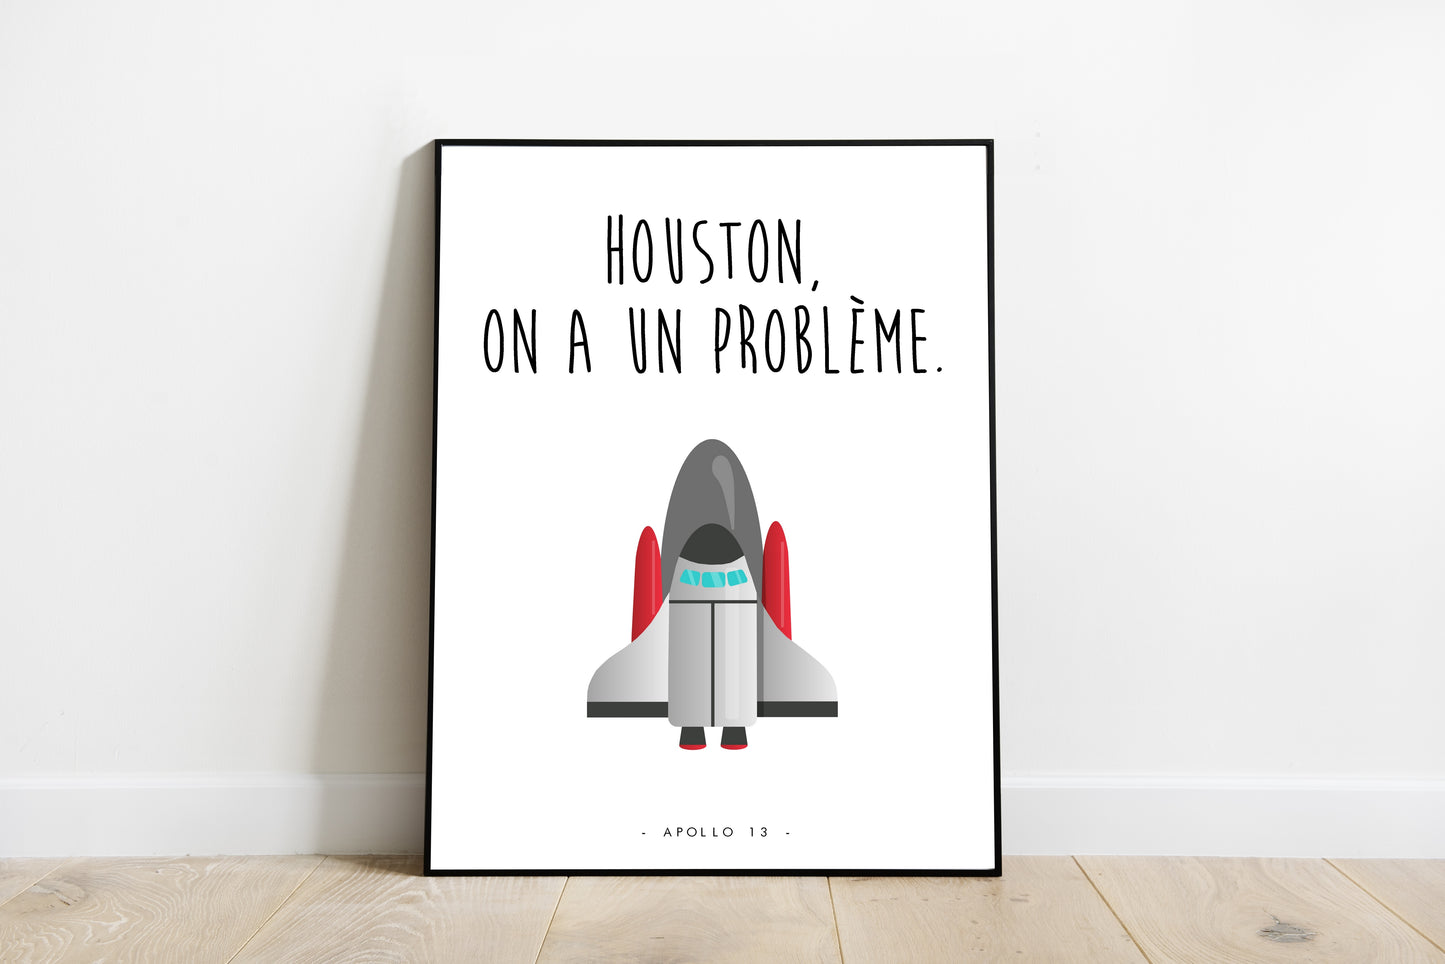 Apollo 13 - Houston on a un problème